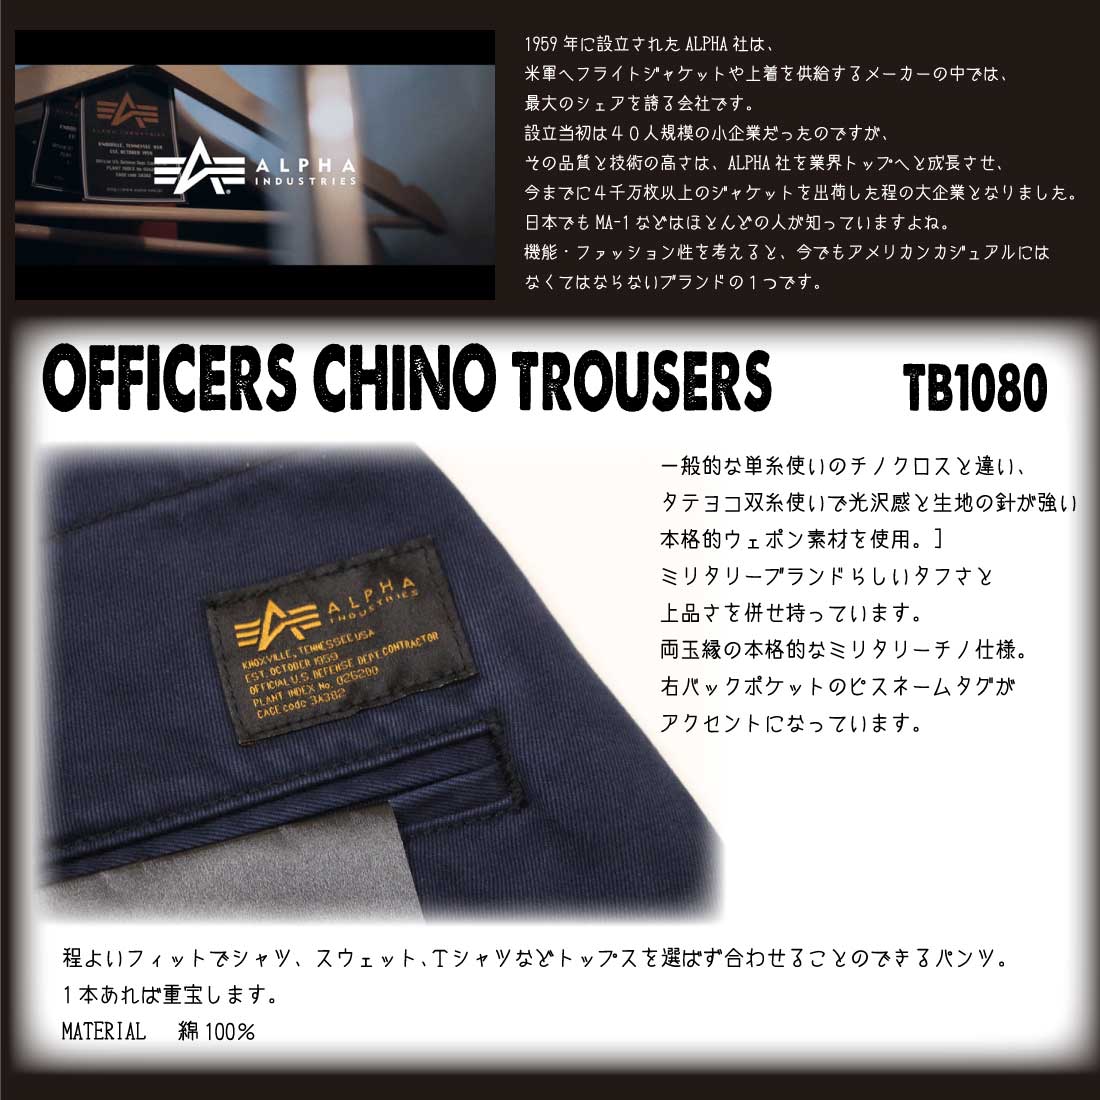 ALPHA INDUSTRIES アルファ インダストリーズ OFFICERS CHINO TROUSERS TB1080 オフィサーズ チノパンツ  トラウザー メンズ